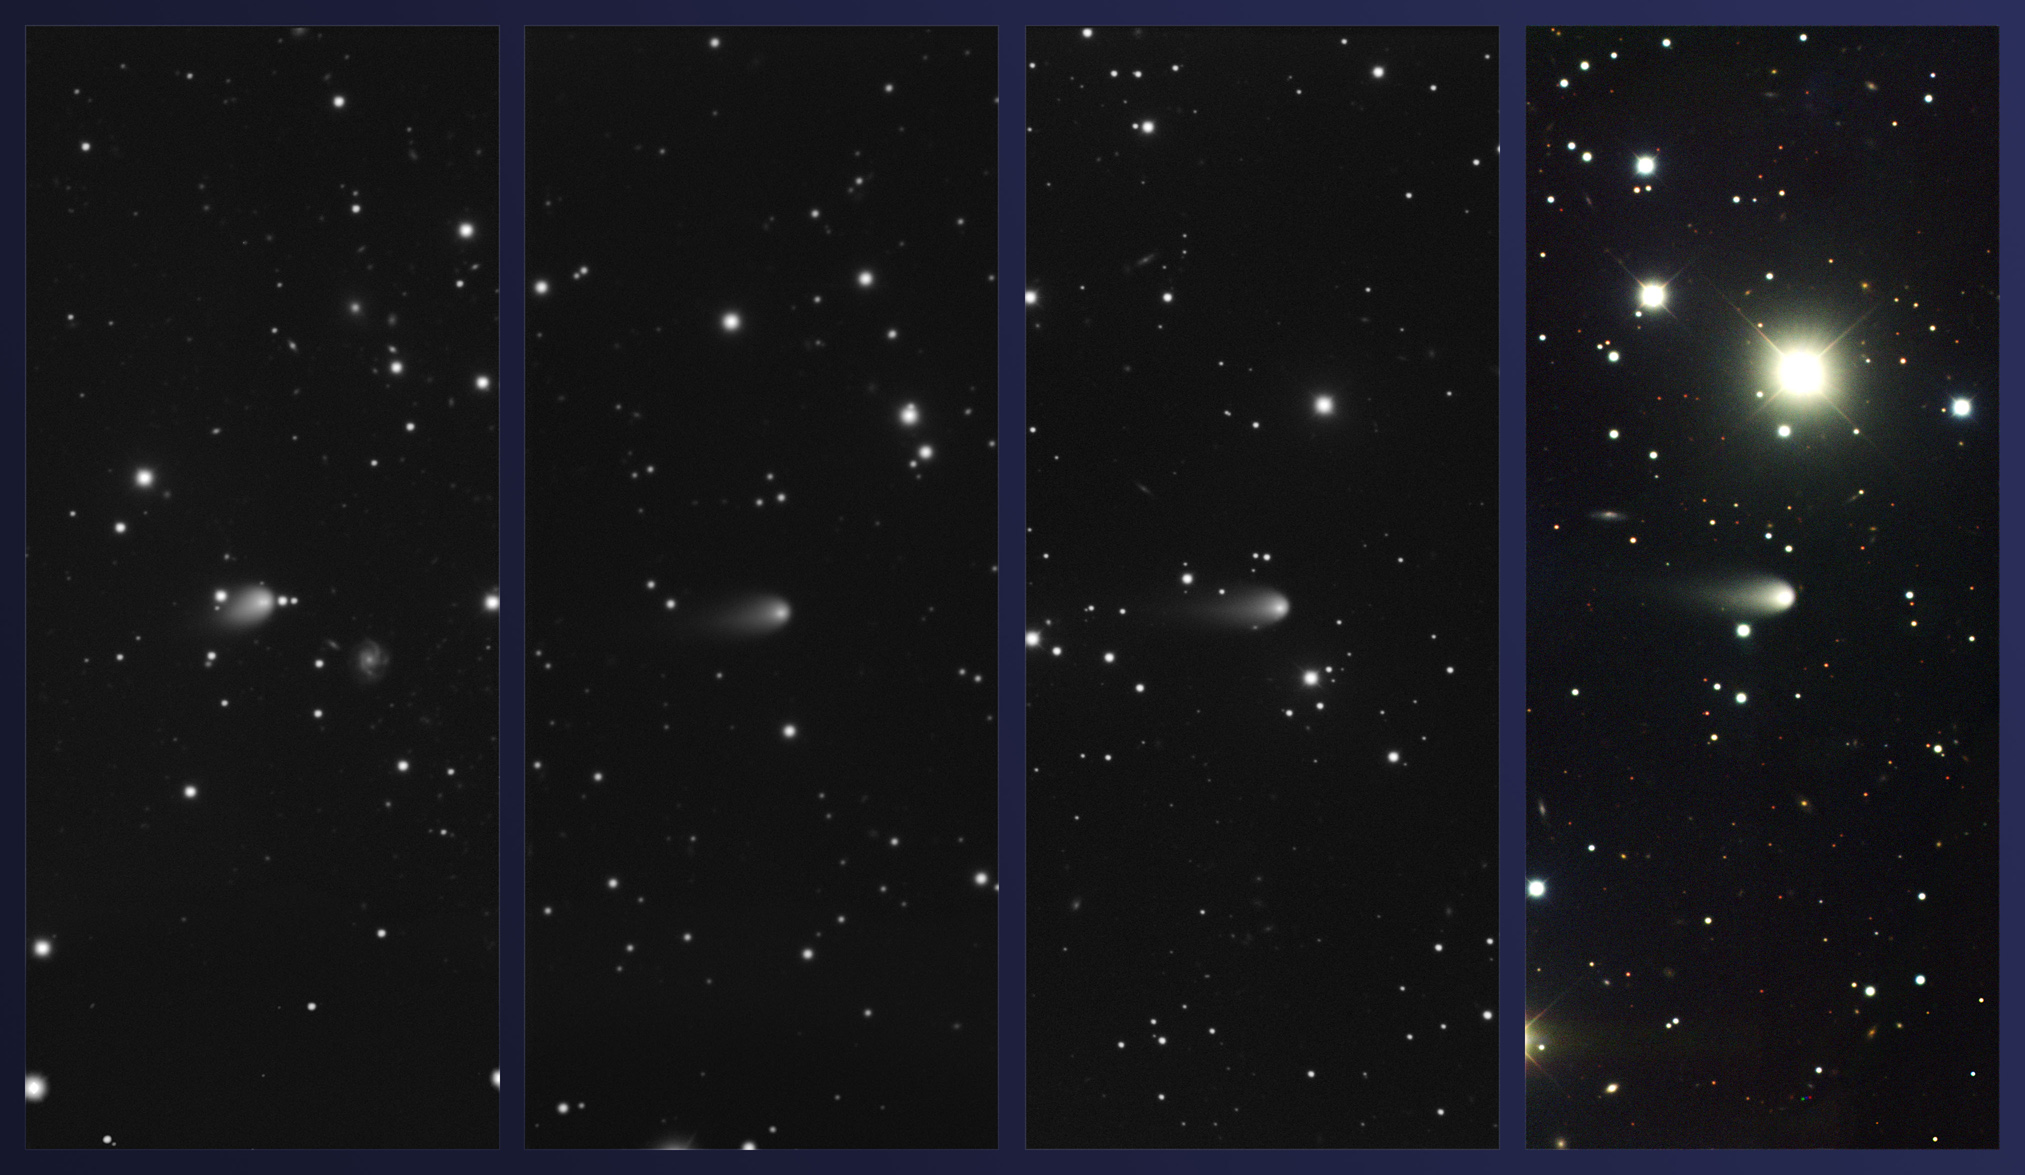 Ces 4 images ont été réalisées par le spectrographe multi-objets qui équipe le télescope Gemini nord de 8,1 m de diamètre. Elles montrent la comète Ison les 4 février, 4 mars, 3 avril et 4 mai 2013. L'éclat de la comète est environ de magnitude 16, alors qu'elle se trouve au niveau de l'orbite de Jupiter. © Gemini Observatory, Aura